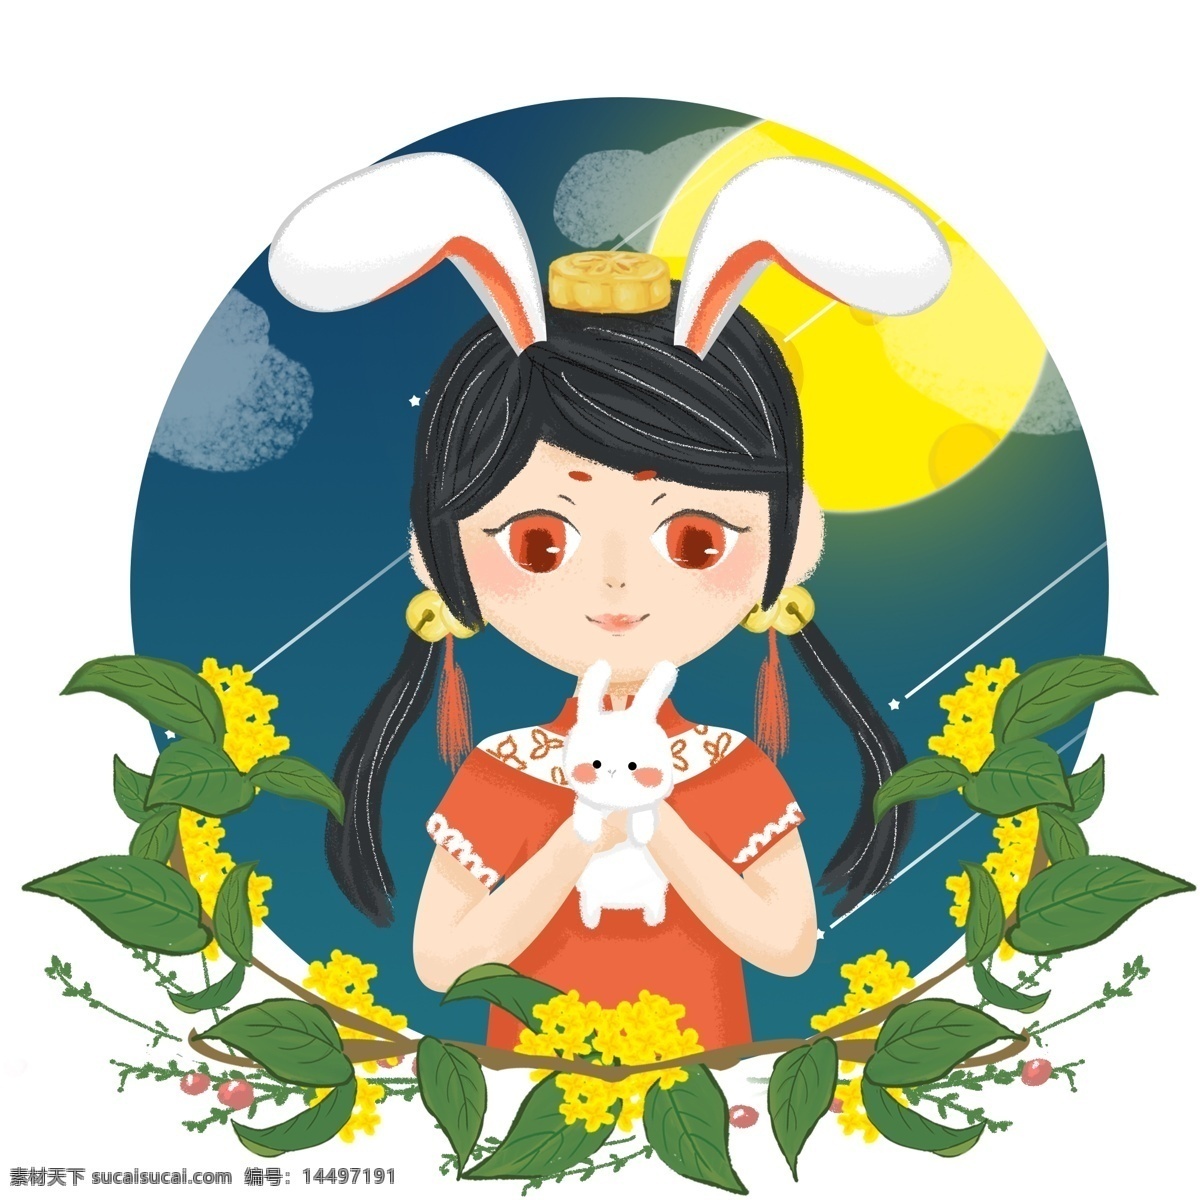 中秋节 玉兔 少女 人物 插画 形象设计 原创 商用 卡通 可爱 手绘 女孩